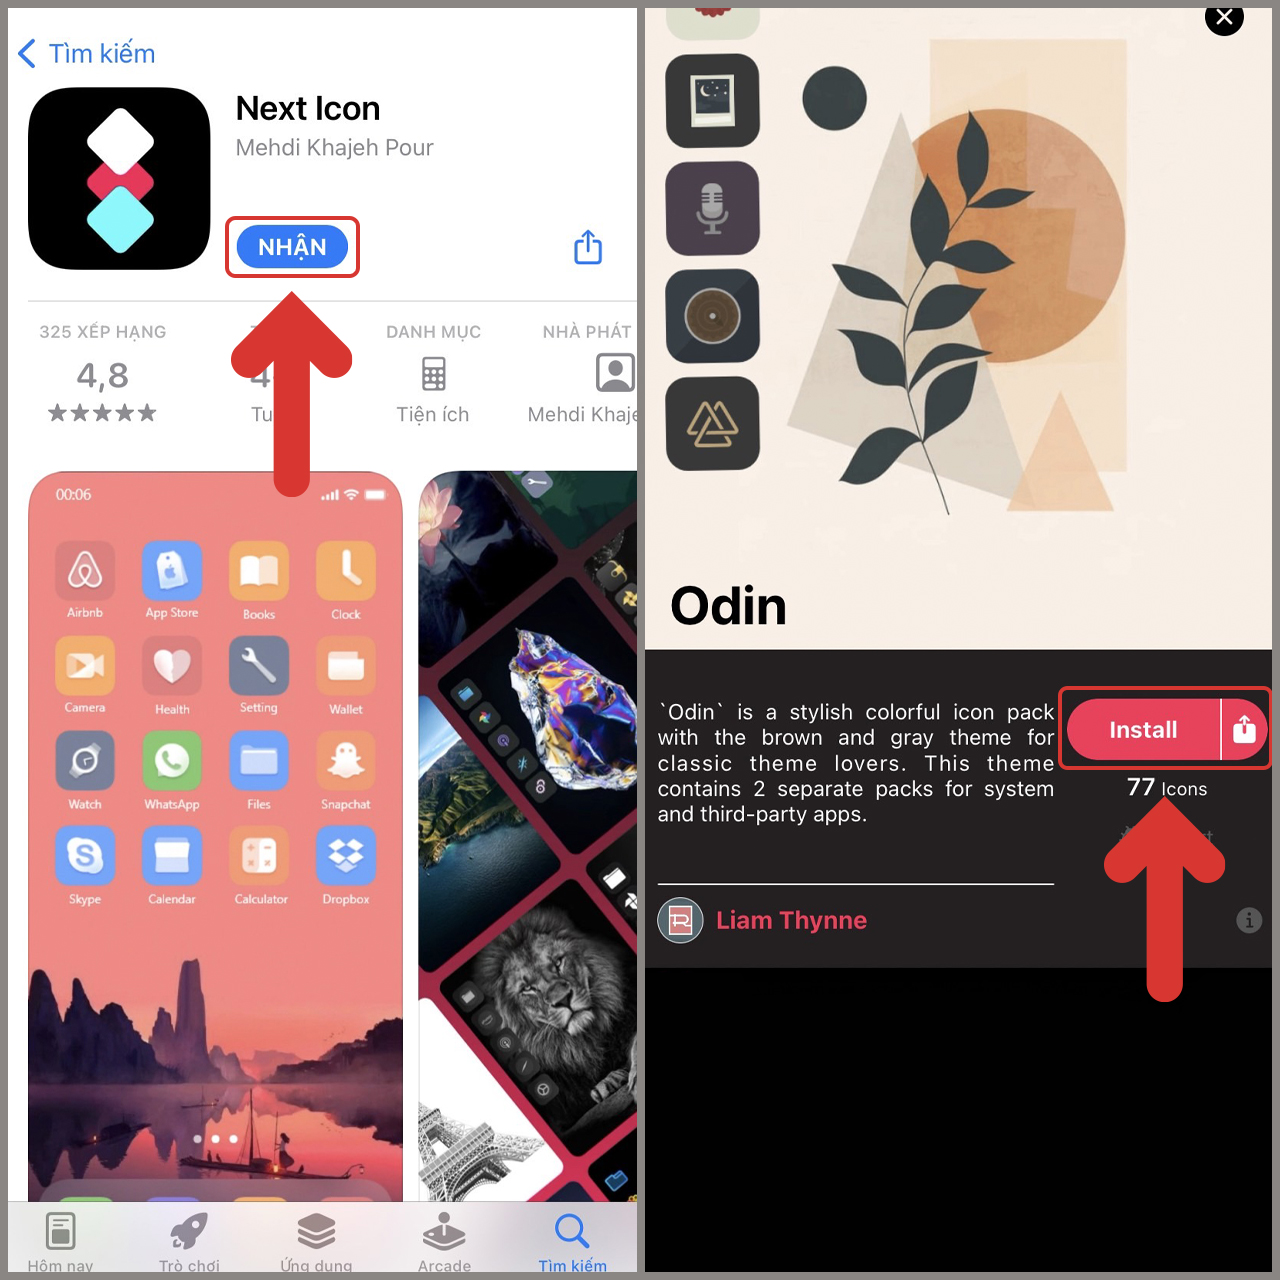 Bạn muốn tạo điểm nhấn mới cho chiếc iPhone của mình? Hãy thay đổi icon trên màn hình chính để tạo ra phong cách trẻ trung và độc đáo. Với iOS 16, bạn có thể dễ dàng tùy chỉnh icon theo sở thích của mình. Hãy xem ngay hình ảnh để tìm hiểu thêm về tính năng này trên iPhone mới nhất.